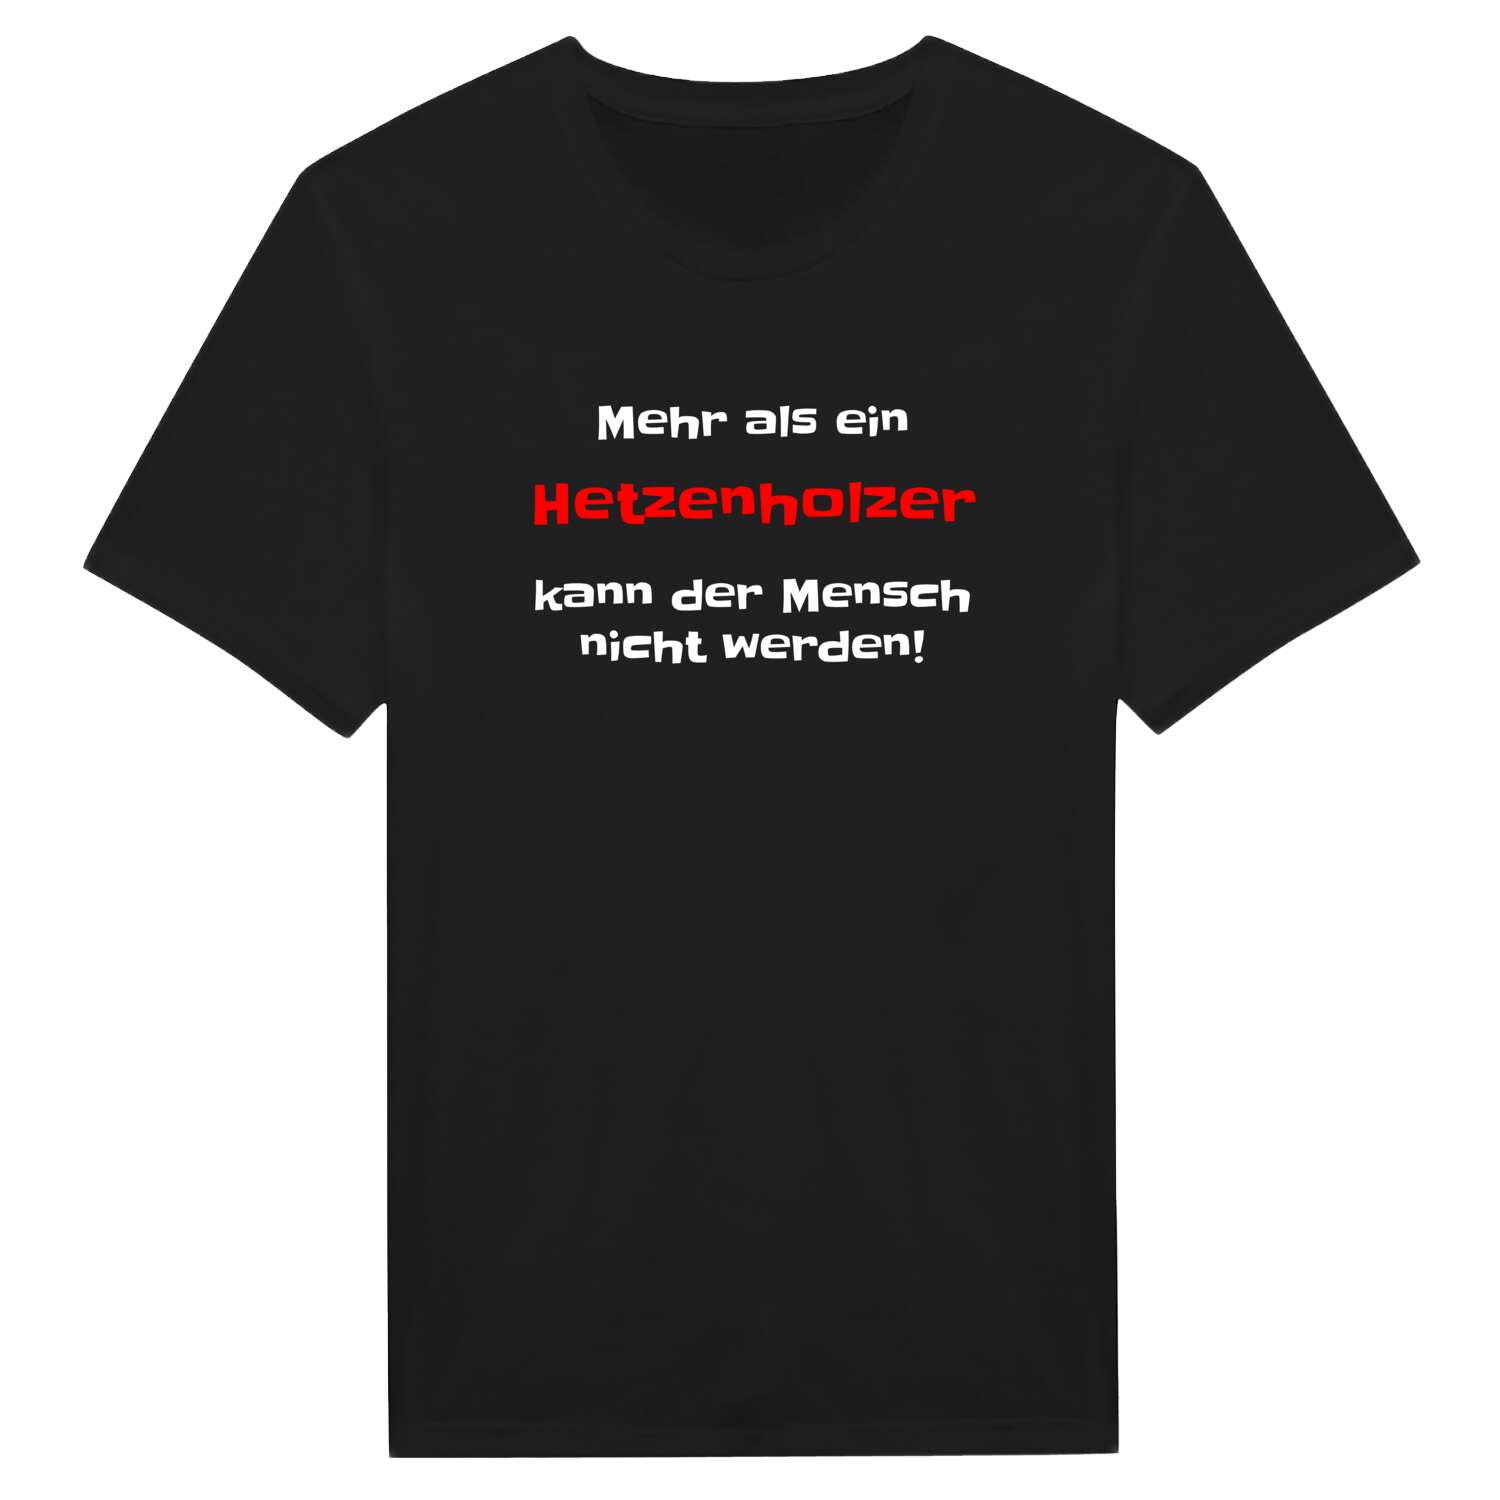 Hetzenholz T-Shirt »Mehr als ein«